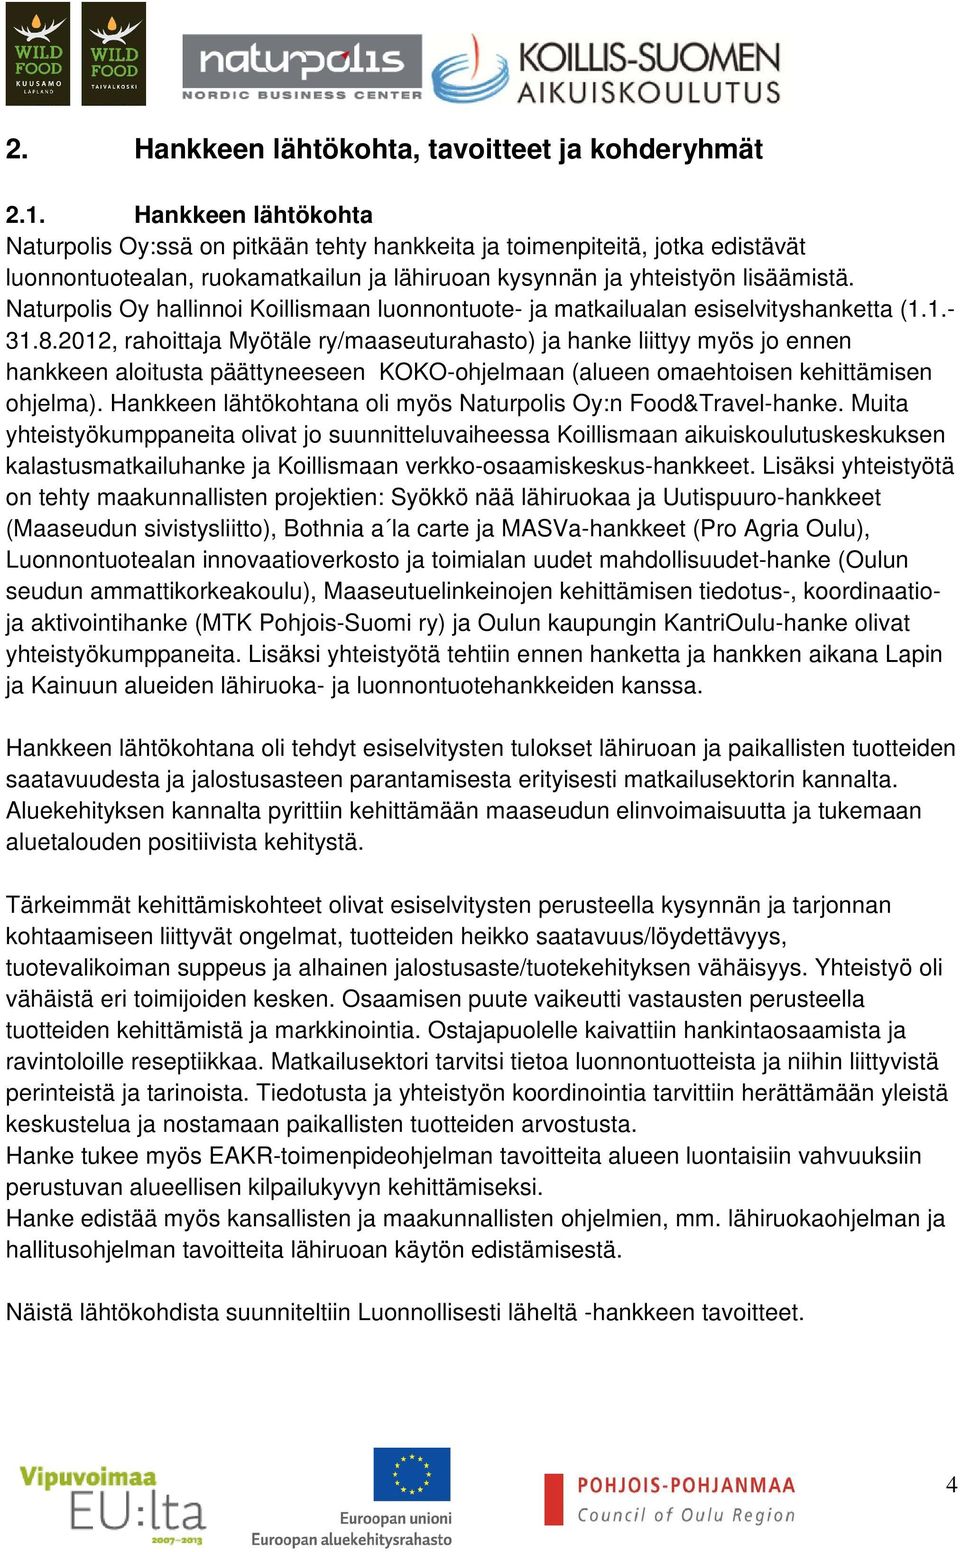 Naturpolis Oy hallinnoi Koillismaan luonnontuote- ja matkailualan esiselvityshanketta (1.1.- 31.8.